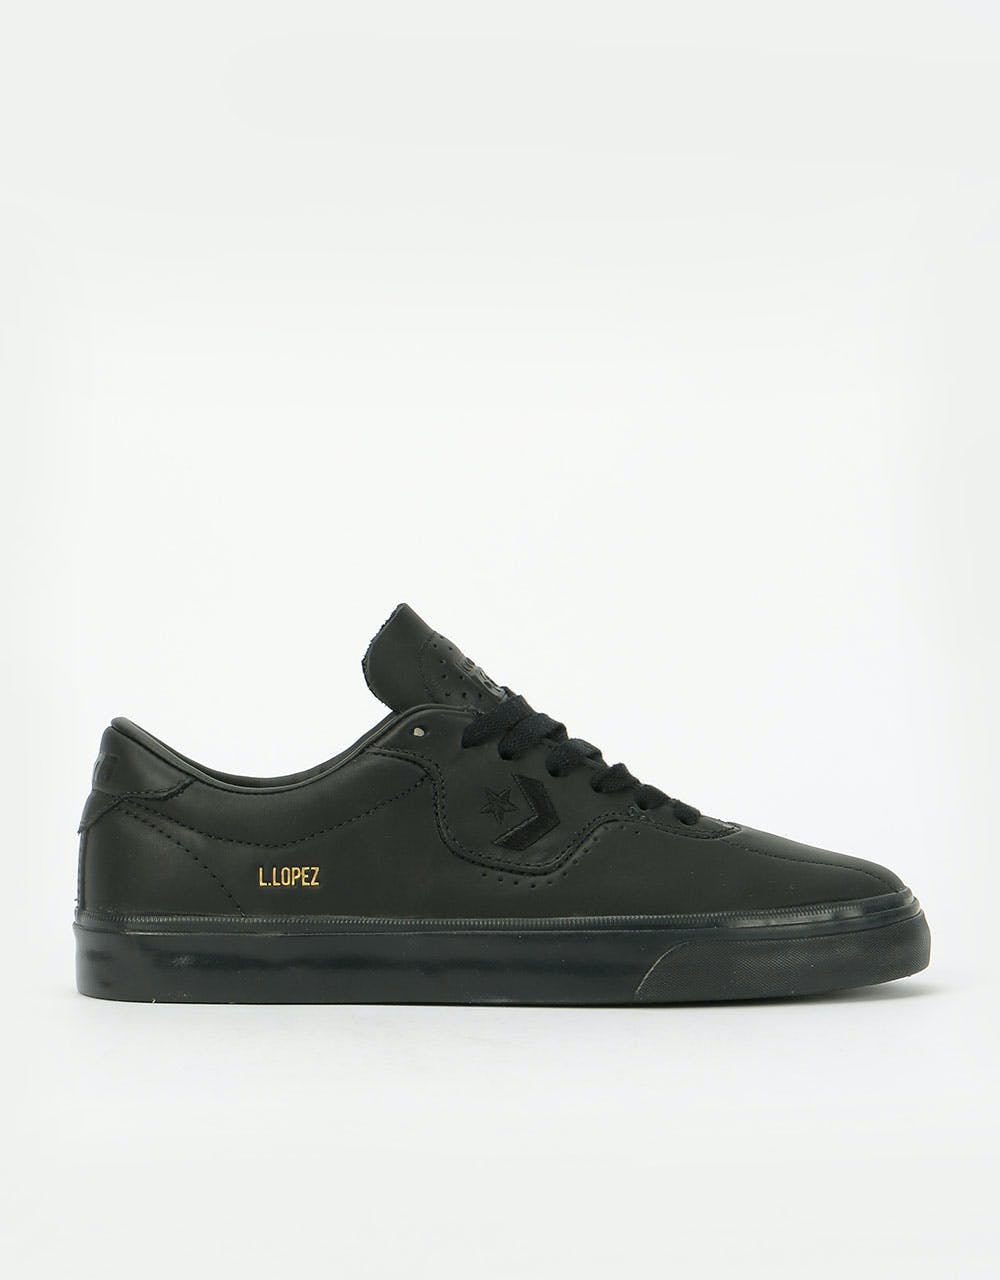 Converse Louie Lopez Pro Ox Leather Skate Shoes - Black/Black/Black